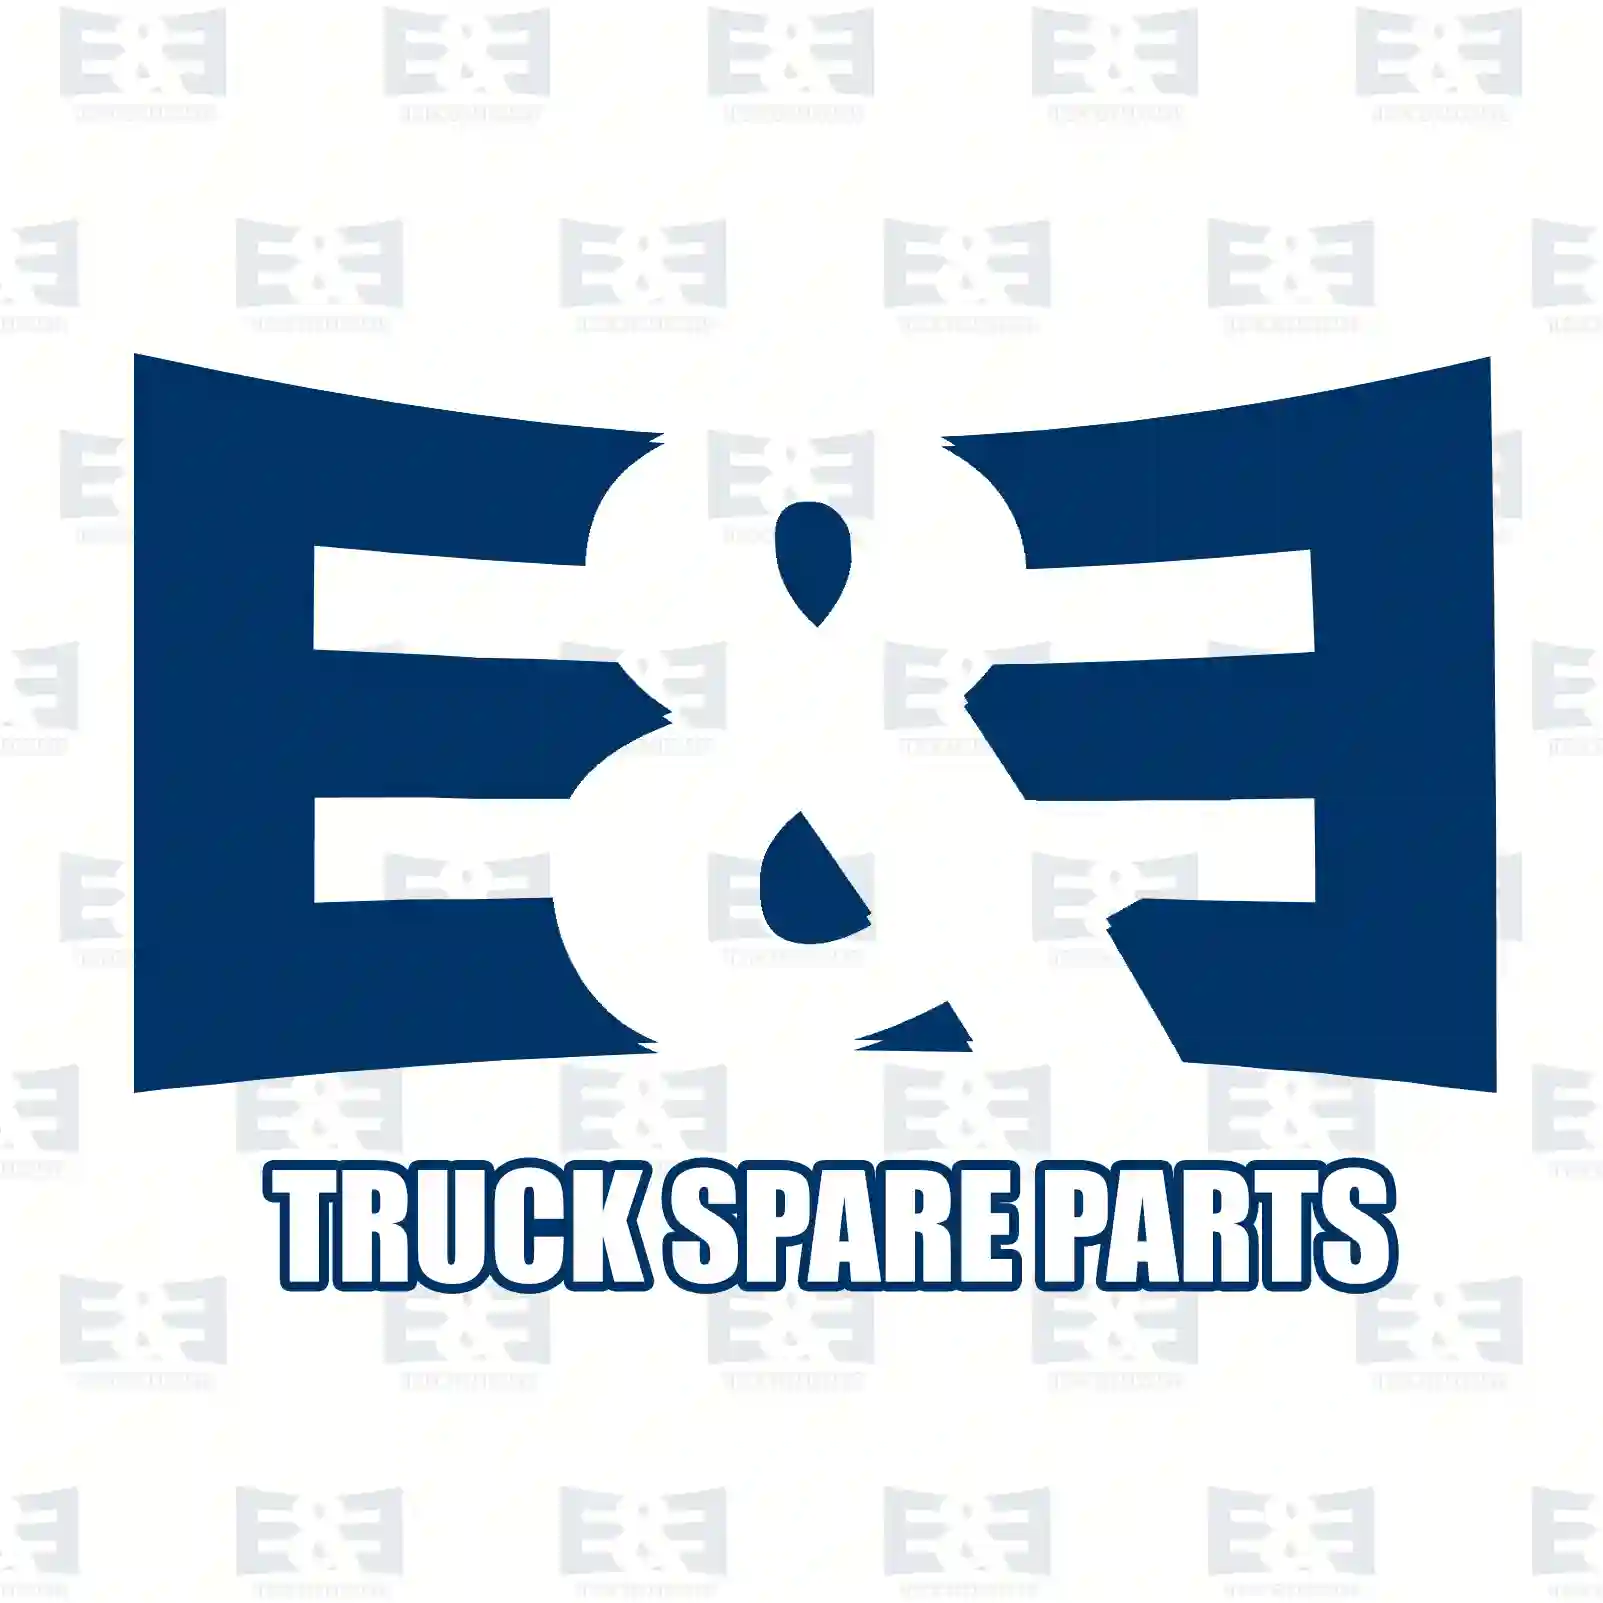 Screw, 2E2296207, 9,10E+11 ||  2E2296207 E&E Truck Spare Parts | Truck Spare Parts, Auotomotive Spare Parts Screw, 2E2296207, 9,10E+11 ||  2E2296207 E&E Truck Spare Parts | Truck Spare Parts, Auotomotive Spare Parts